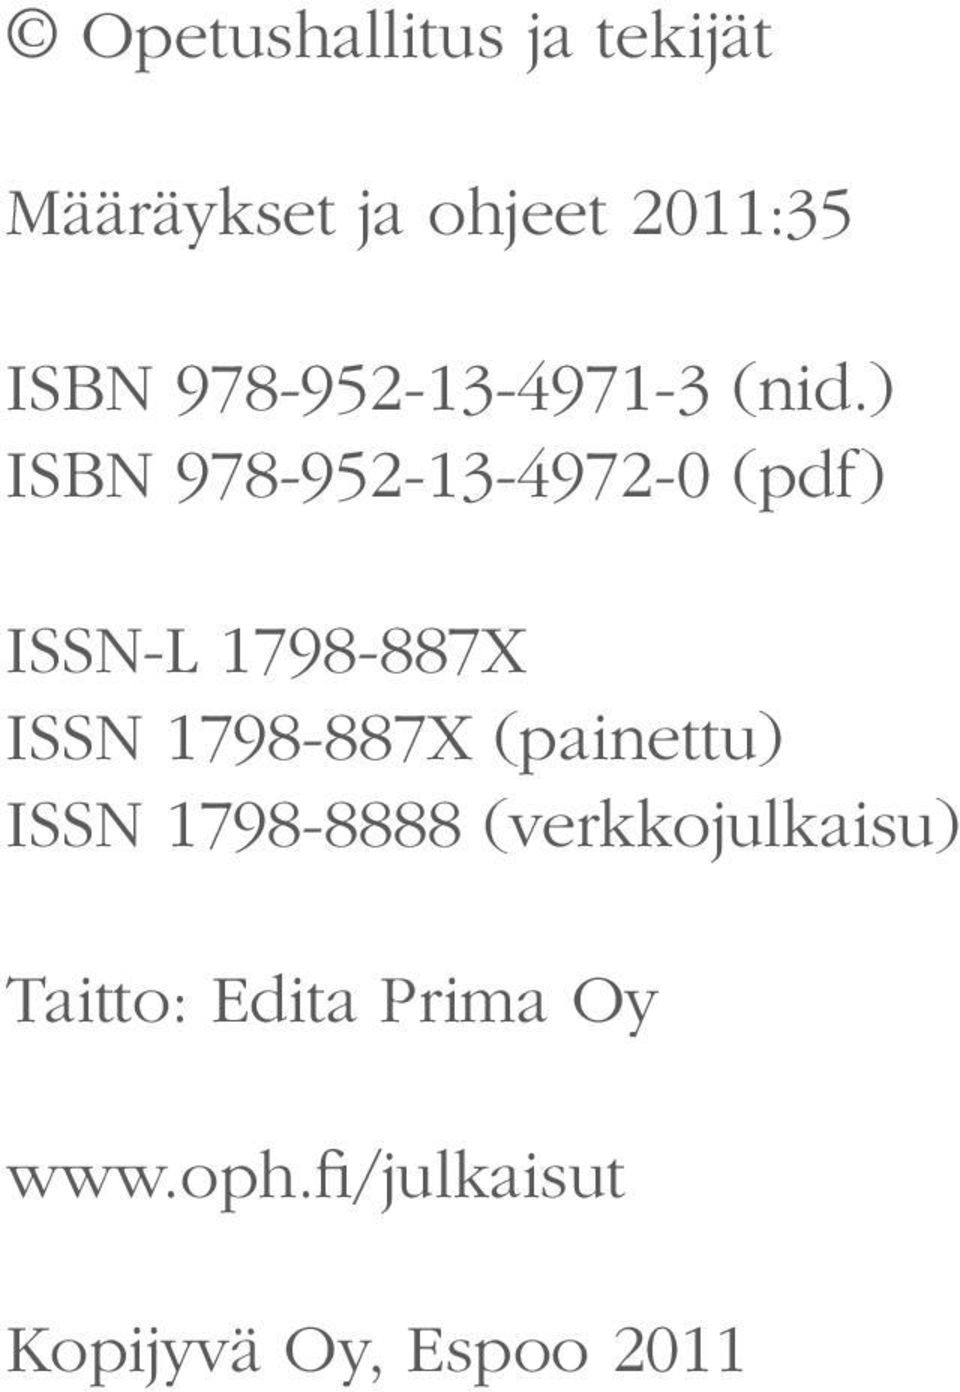 ) ISBN 978-952-13-4972-0 (pdf) ISSN-L 1798-887X ISSN 1798-887X